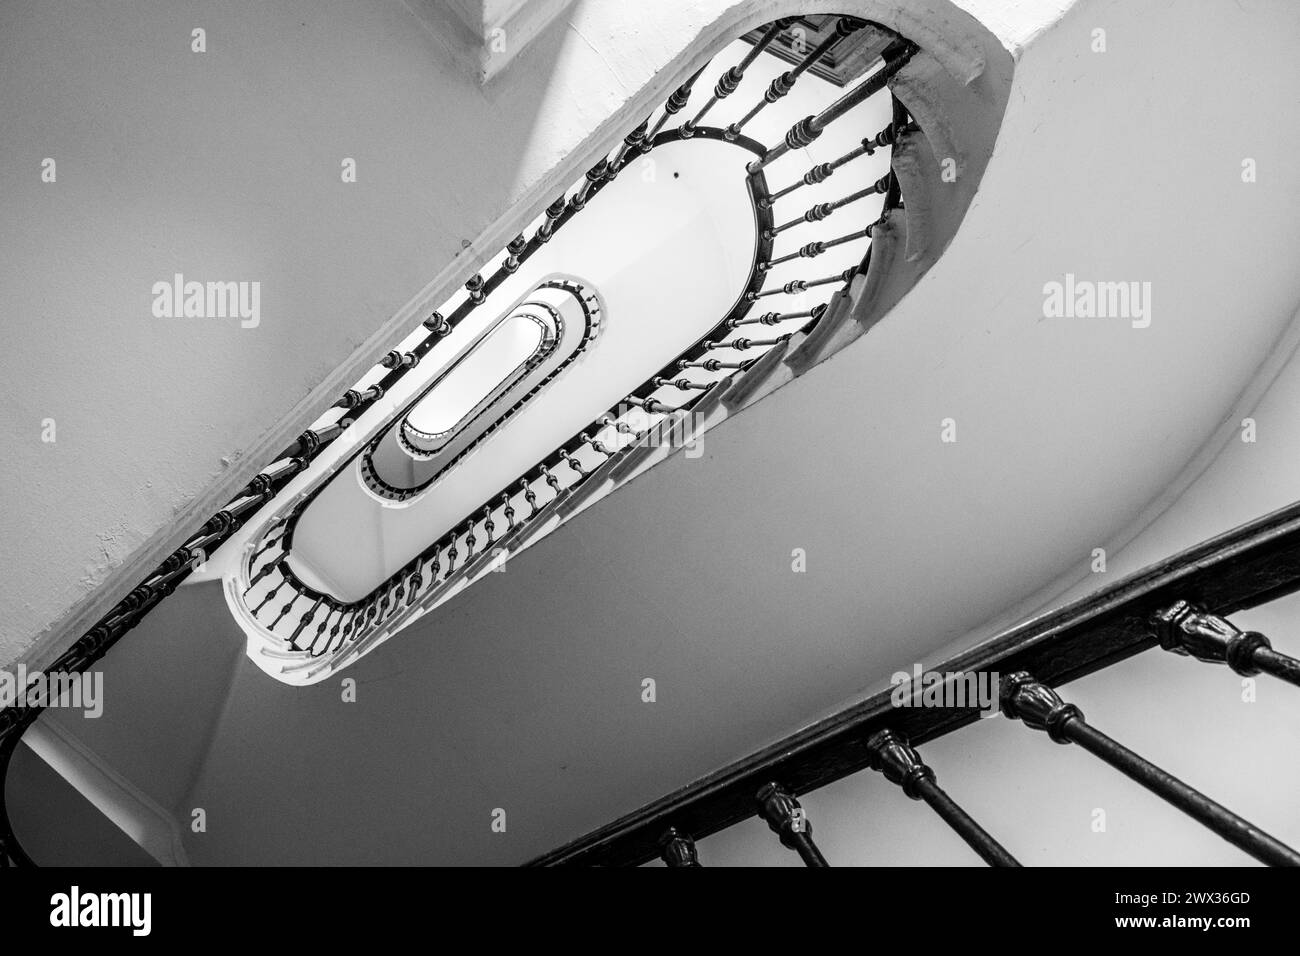 Ein fesselndes Schwarzweiß-Bild, das das komplizierte Design einer Wendeltreppe erfasst und die längliche ovale Form und das detaillierte Geländer betont. Die Perspektive bietet einen faszinierenden Blick, der den Blick nach oben zieht und architektonische Schönheit und Designpräzision zeigt. Schwarzweißbild. Stockfoto